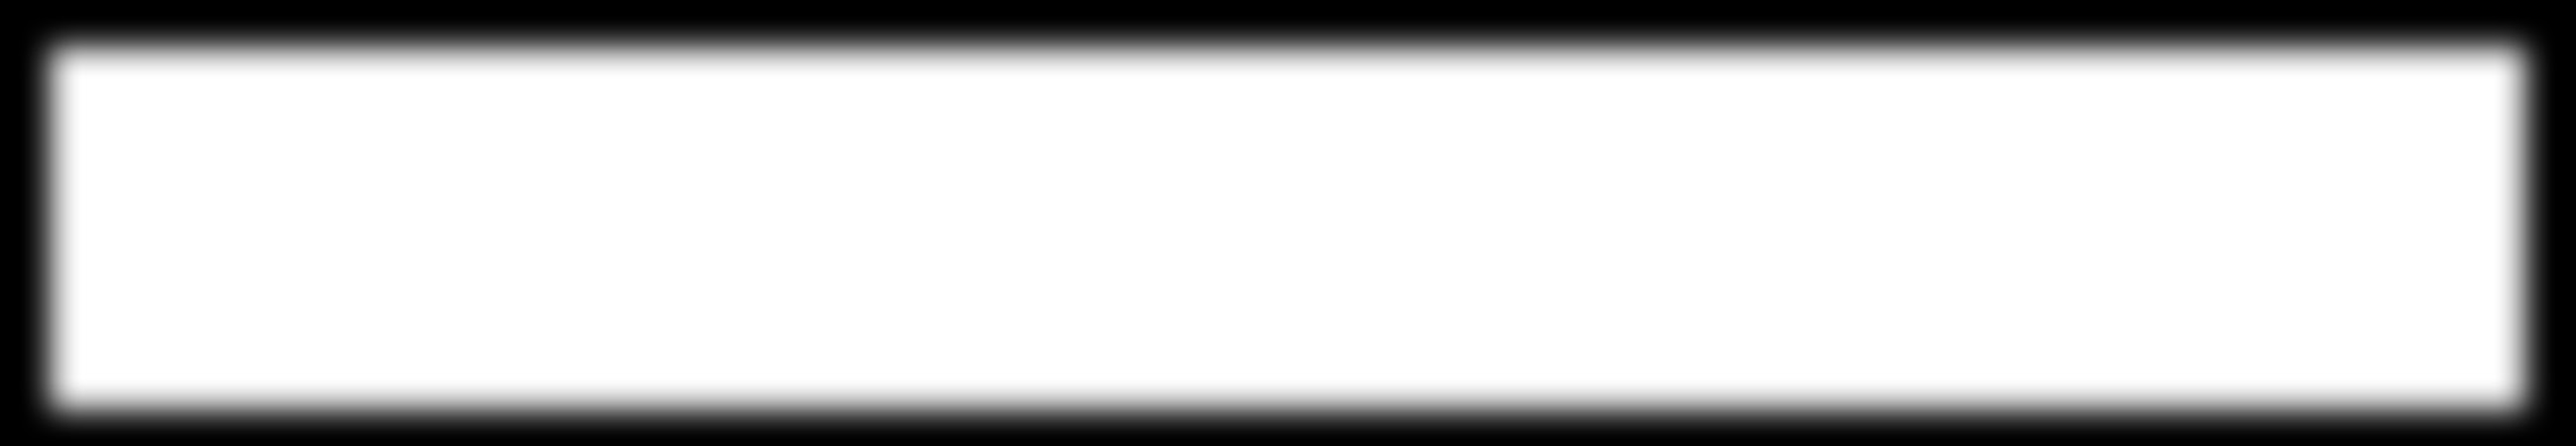 50% på Easy hvilestol ARKANSAS hjørnesofa med divan i stoff Muna lys grå, med stålben 241x306, D 157 cm, H 80 cm NÅ 8.999,- (før 12.999,-) Nr. 205682/205686 Leveres som høyre- og venstreoppsett.